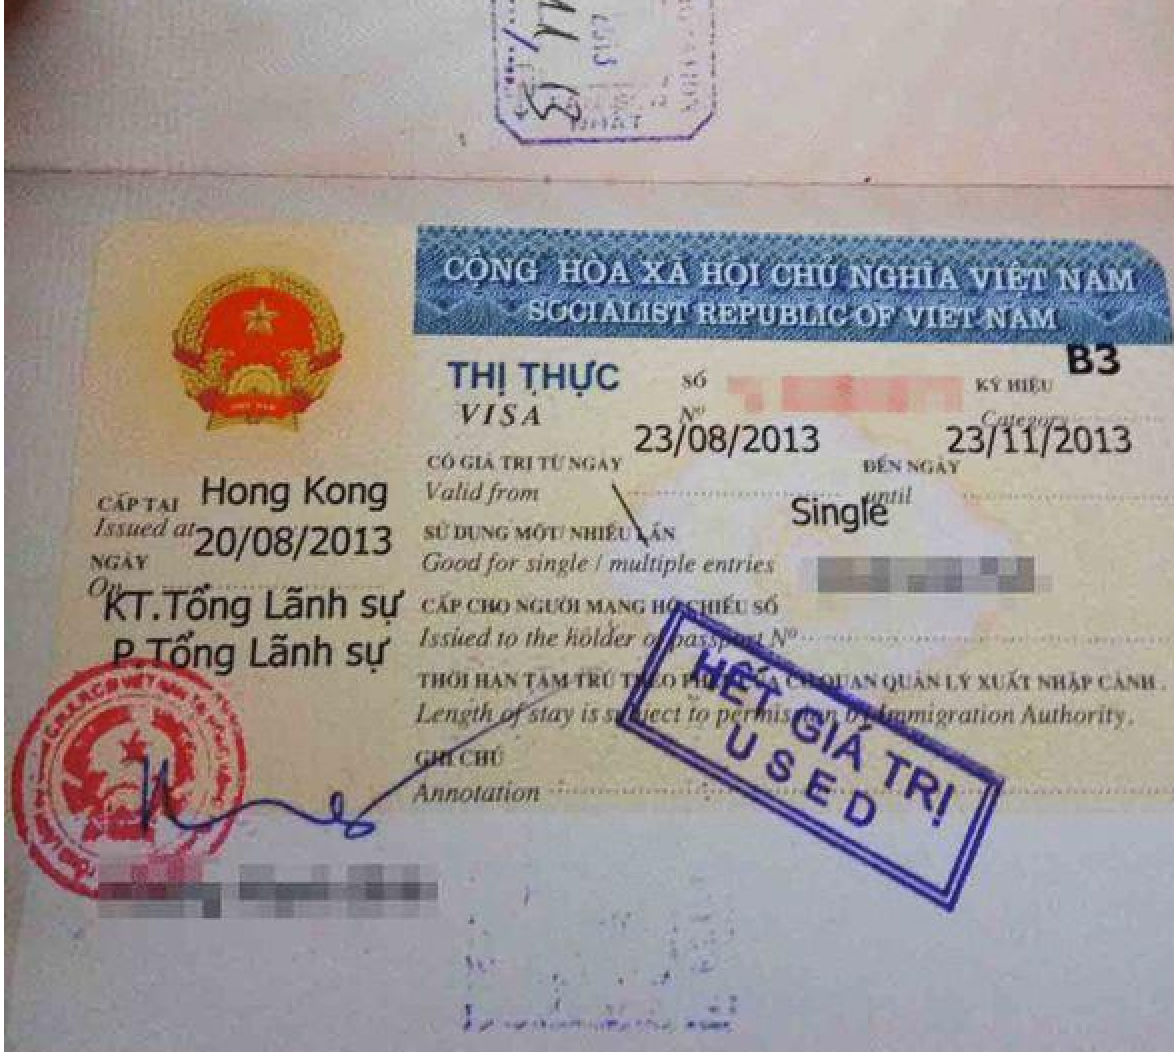 宋清辉:越南借南海仲裁案之机中国制造麻烦